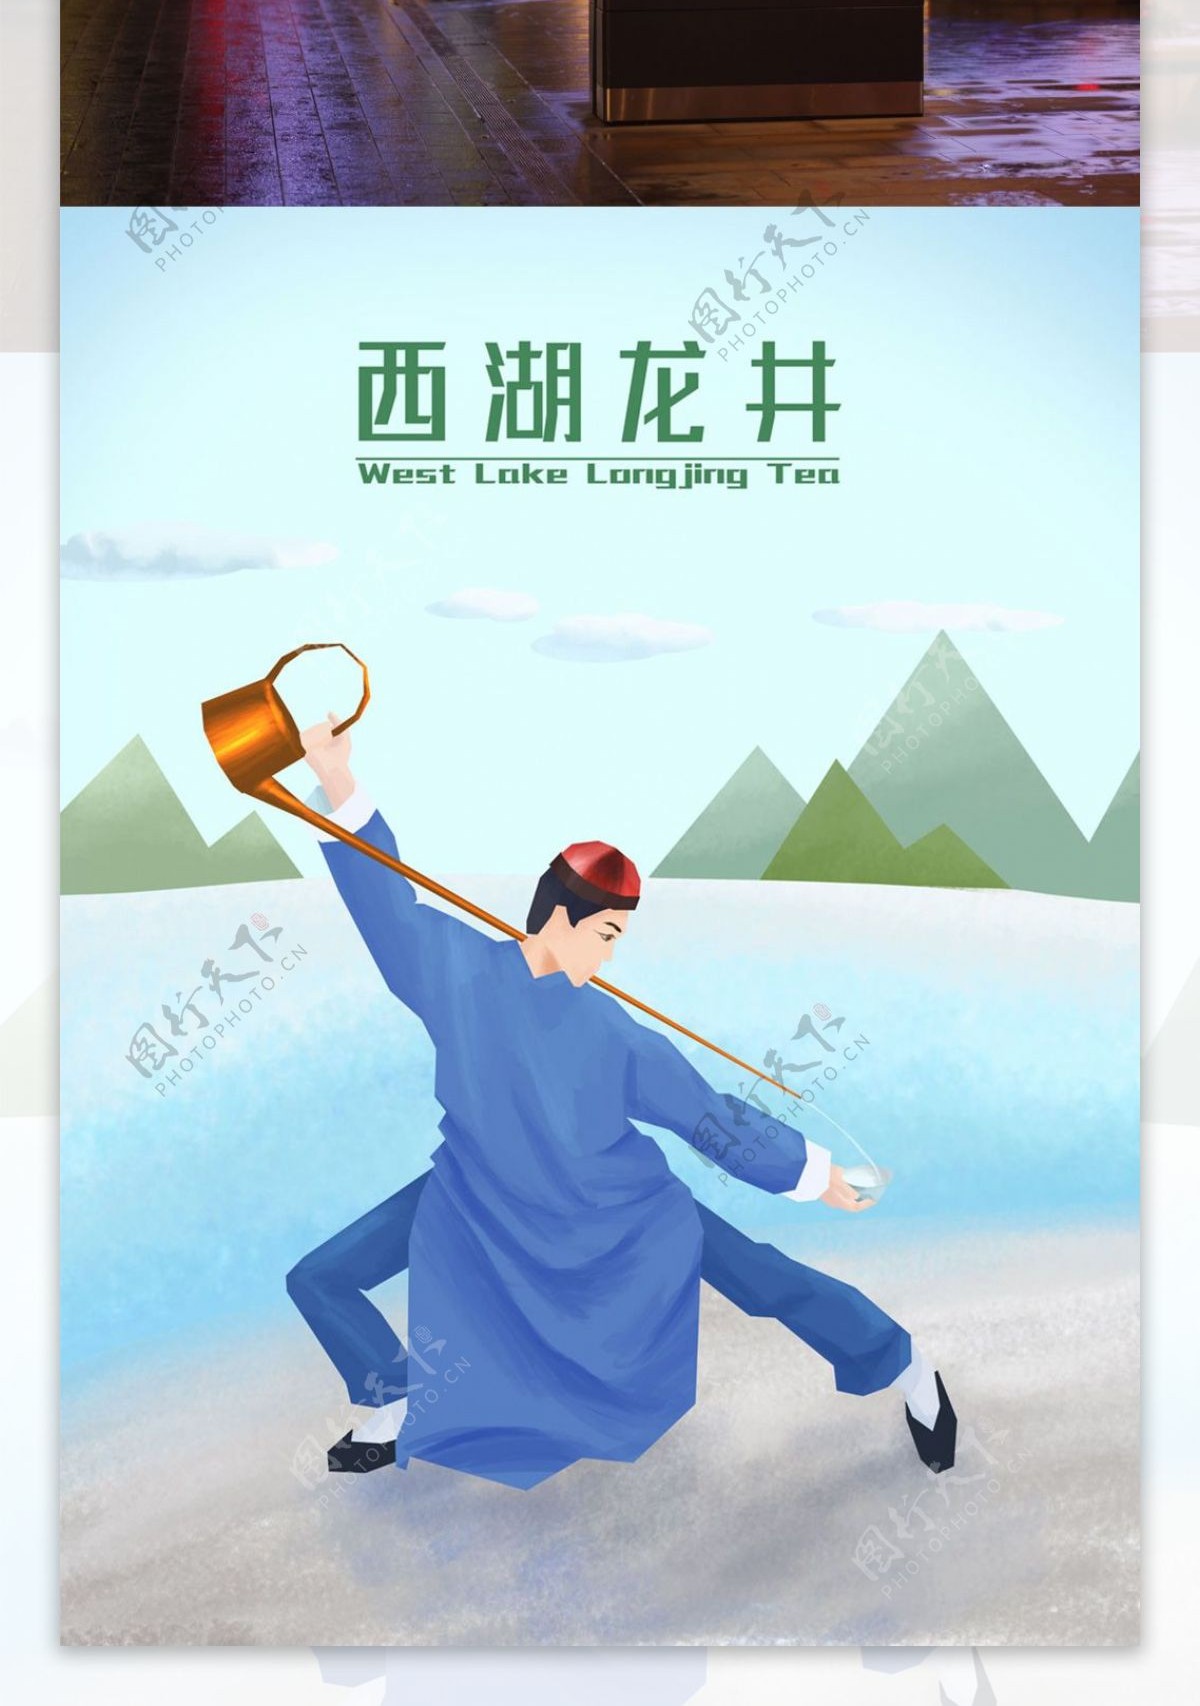 西湖龙井绿茶中国茶手绘海报